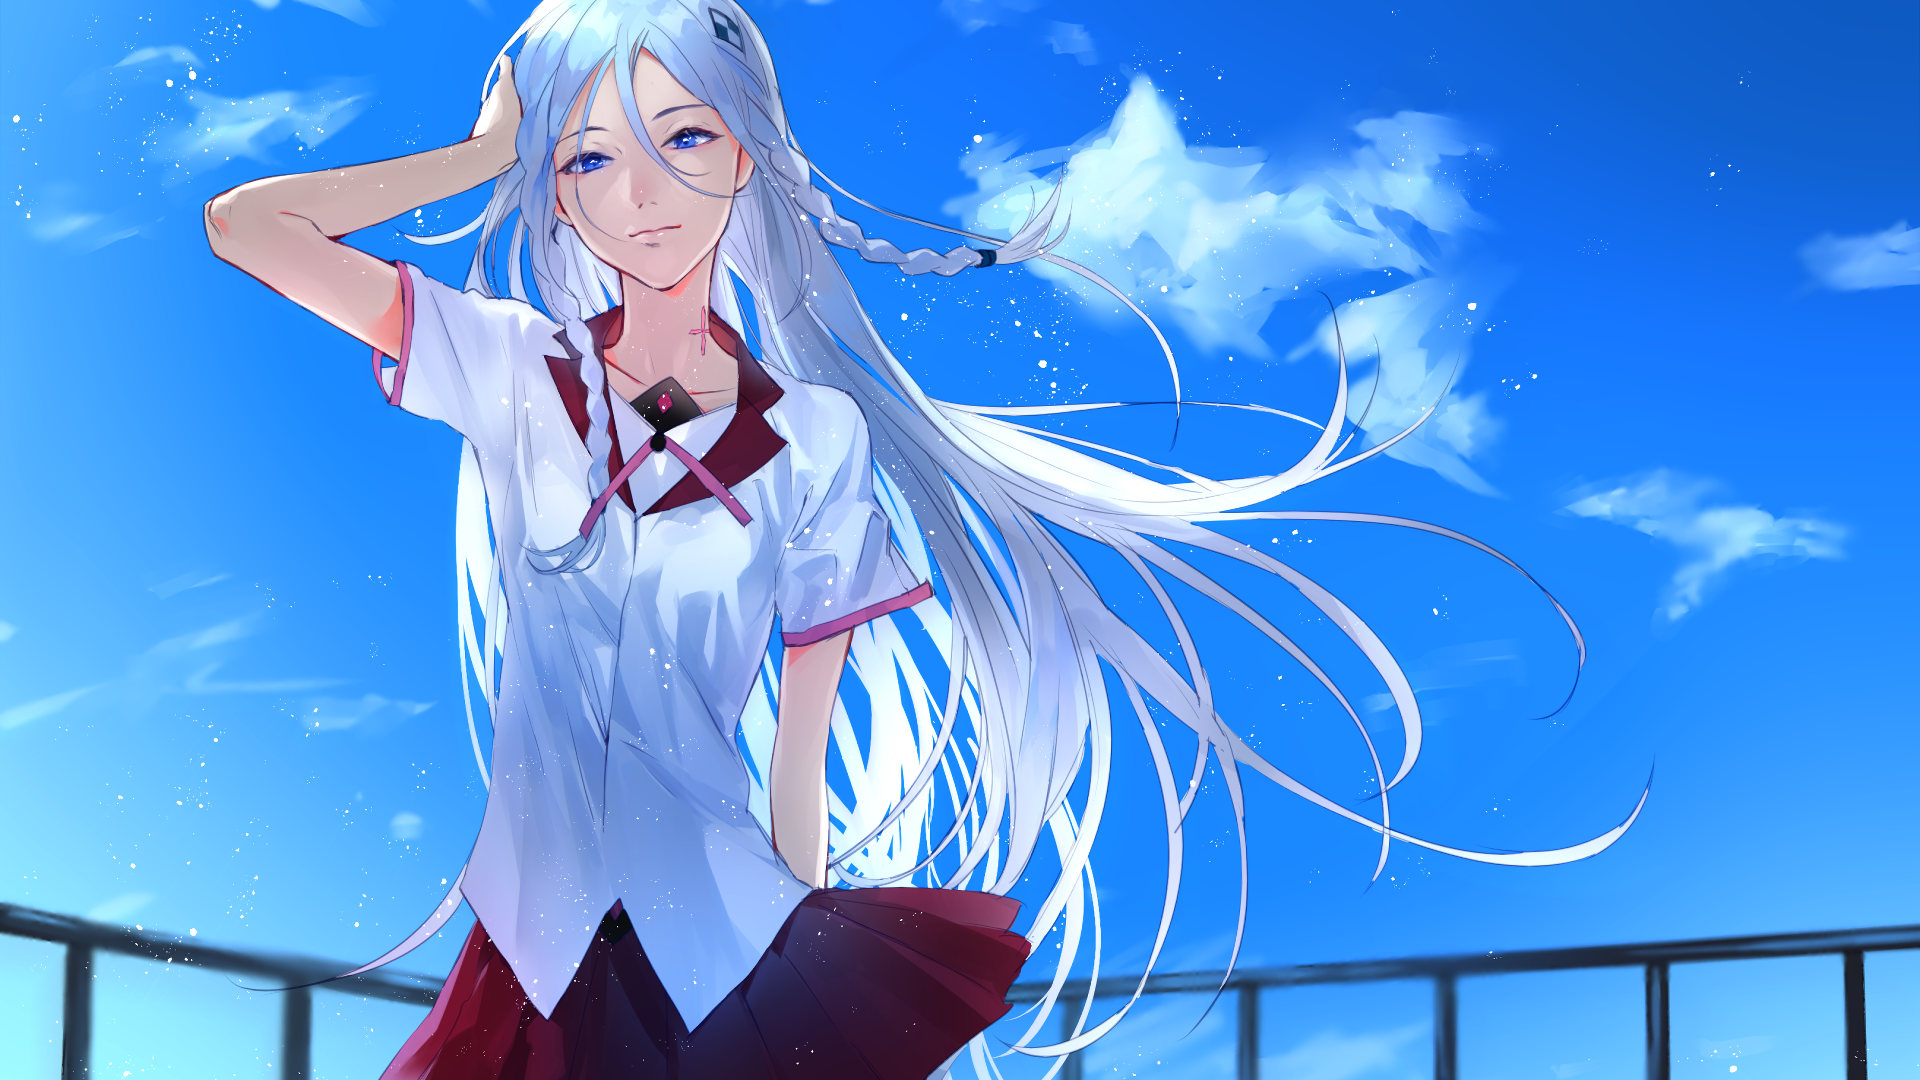 White Haired Anime Girl School Girl - HD Wallpaper 